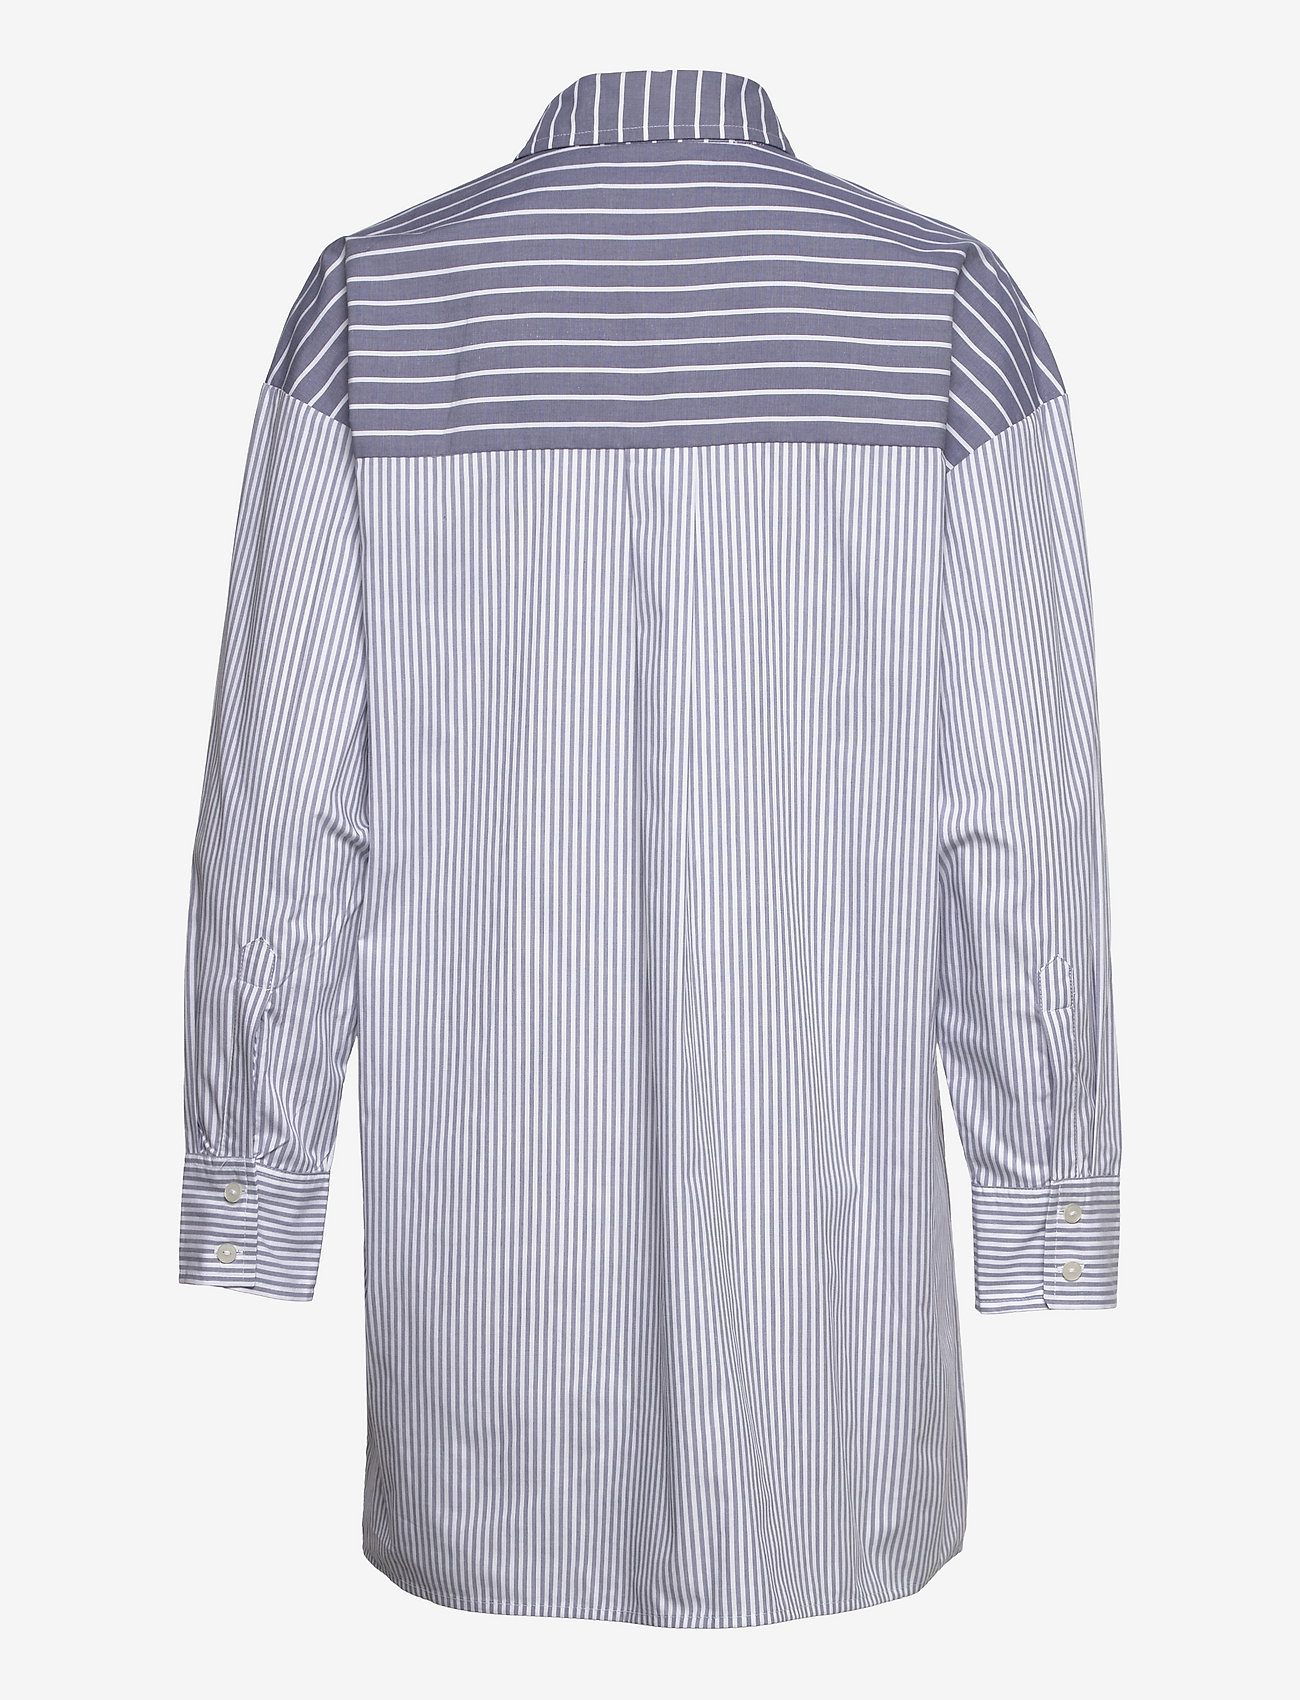 Abercrombie & Fitch - ANF WOMENS DRESSES - marškinių tipo suknelės - blue grounded stripe - 1